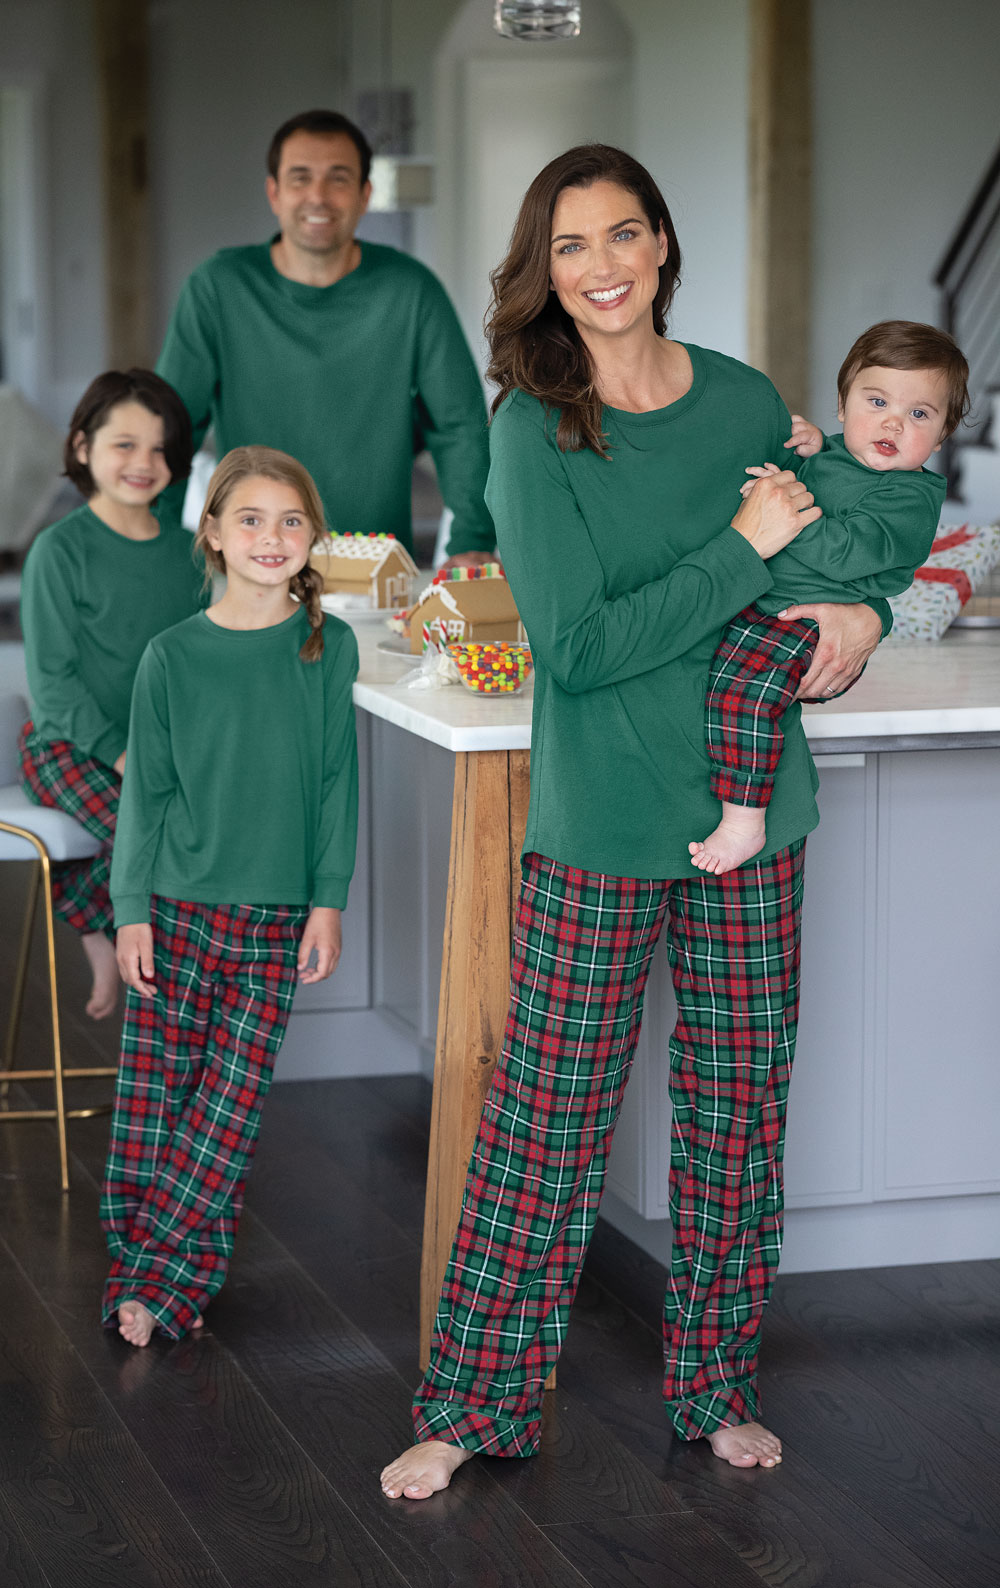 Personalized Pajama Pants / Monogrammed Plaid Pajama Pants / Flannel Pajama  Pants / Christmas Plaid Pajamas / Custom Pajamas 